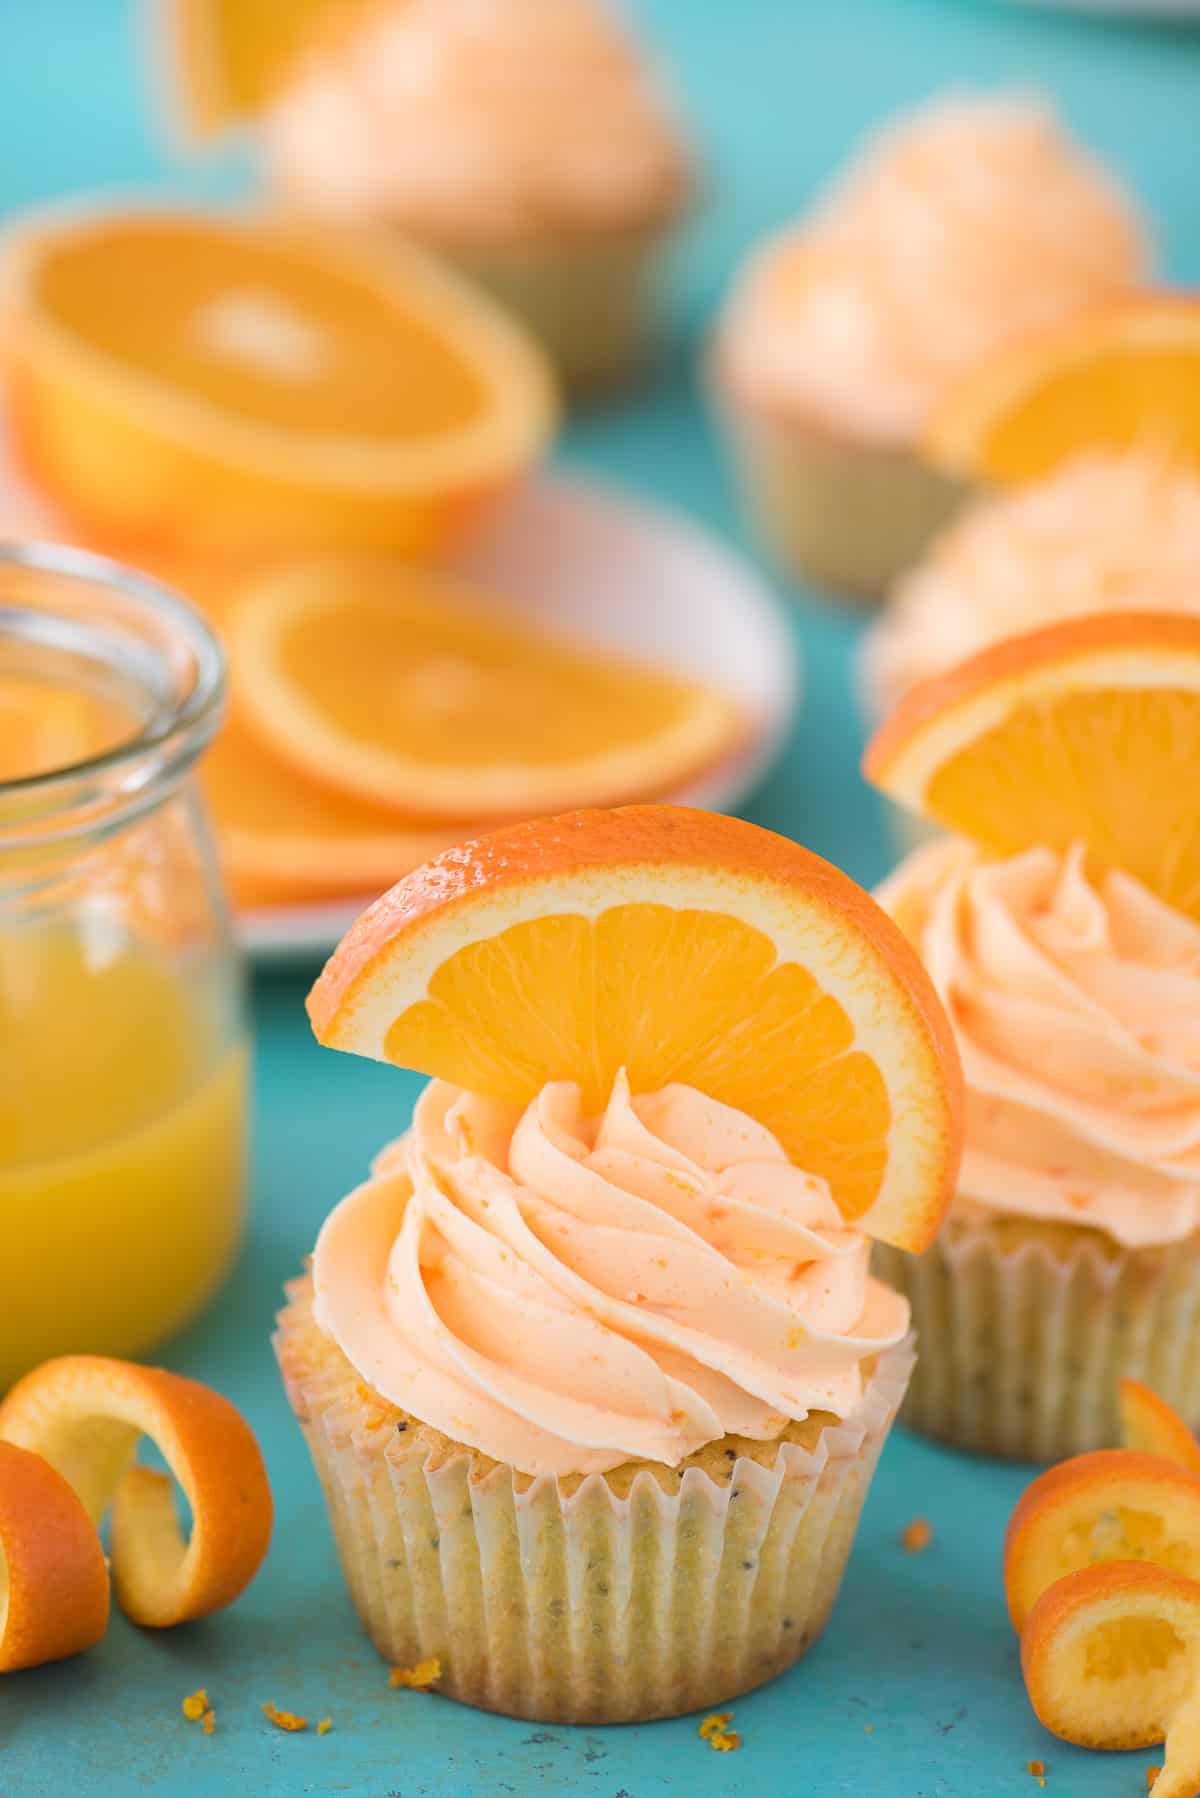 Orange Poppy Seed Cupcake with orange slice on blue background